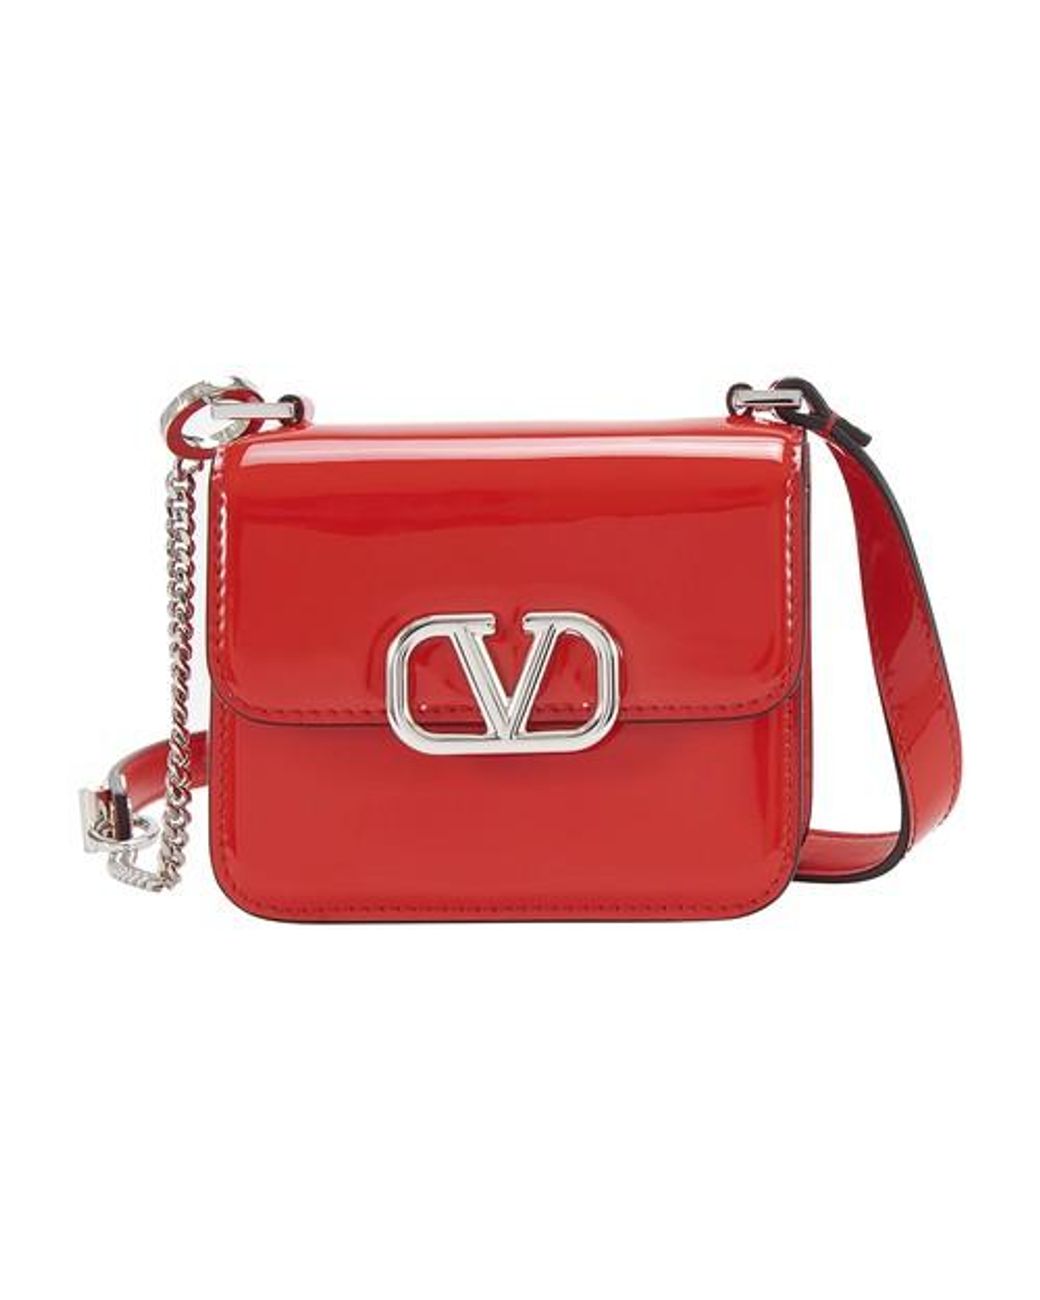 Valentino Garavani Garavani - Micro V Sling Bag in Red - Lyst